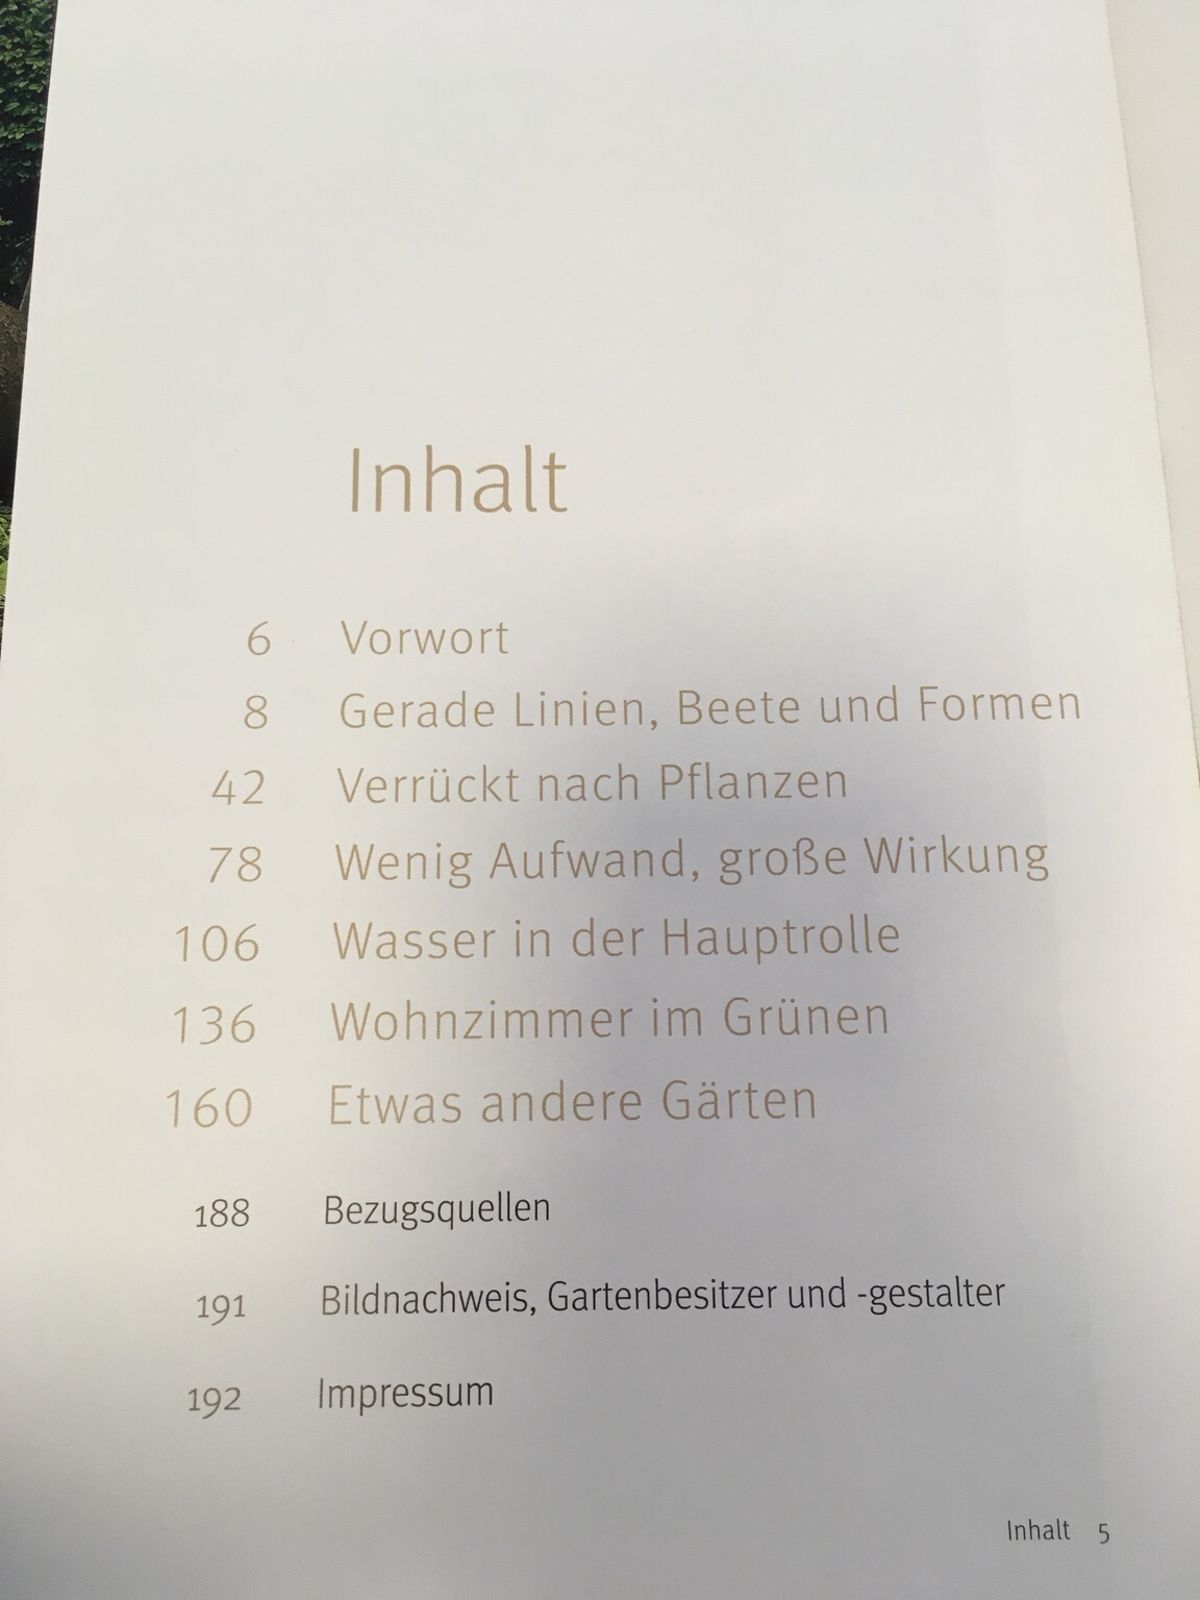 Gartenbeispiele Schön Buch 50 Kleine Gärten Von 20 Bis 150 Qm In 4911 Tumeltsham